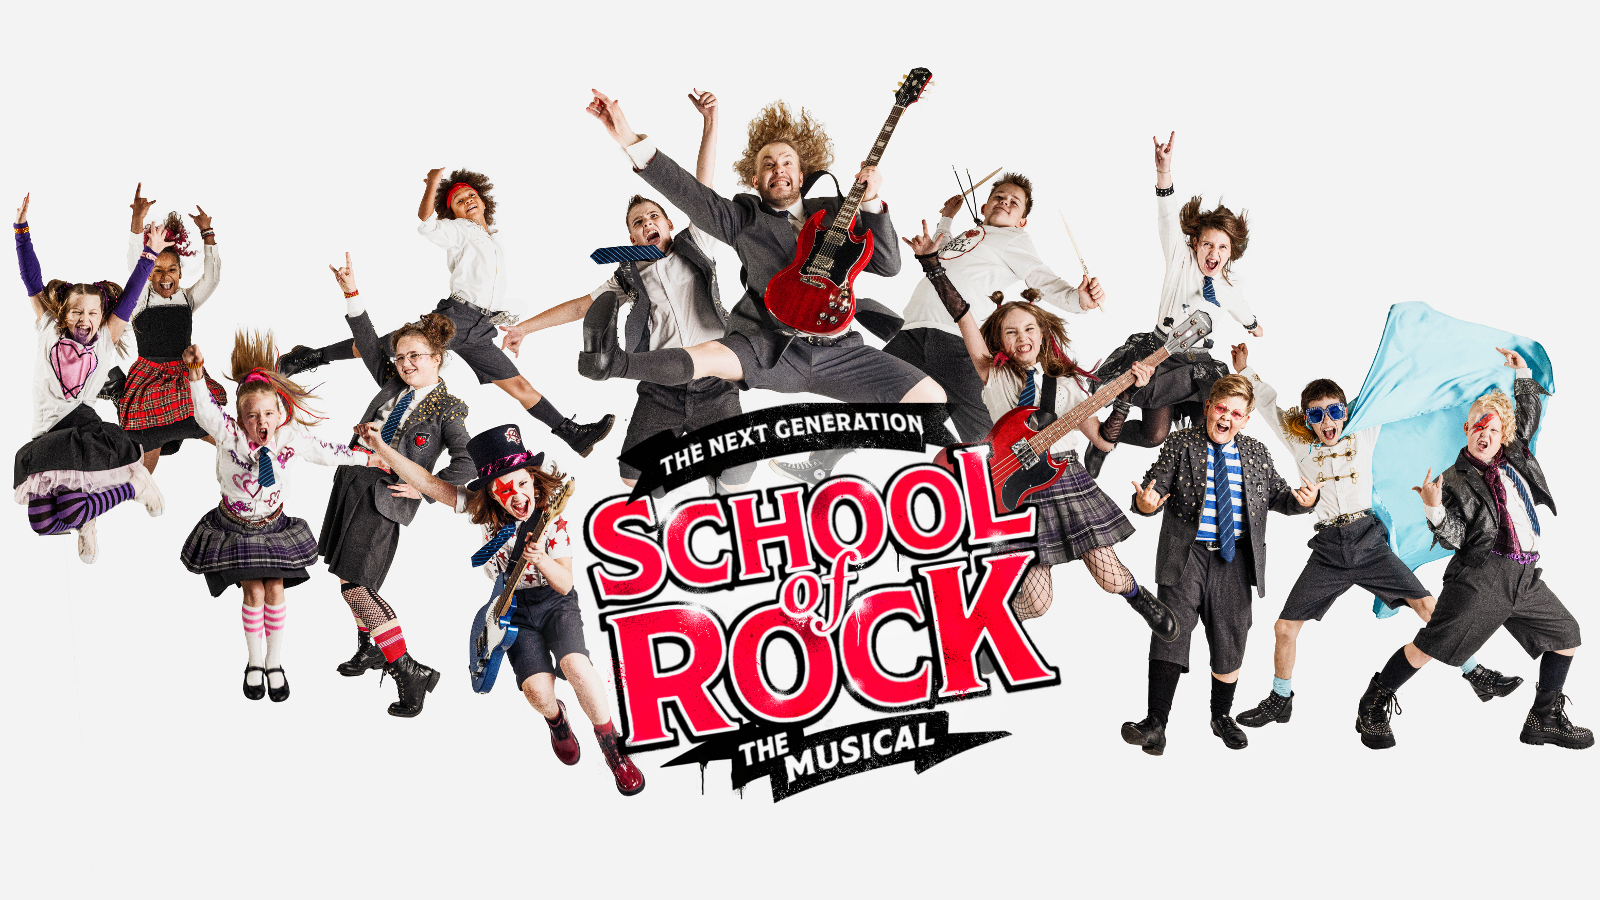 Kuvassa on keskellä alhaalla musikaalin logo isoilla punaisilla kirjaimilla School of Rock.  Ympärillä on musikaalin lapsia hyppimässä roolivaatteissa. Tytöillä on ruudulliset puolihameet ja pojilla alppityyliset vaatteet. Keskellä on Jaakko Vuolijoki kitaraa soittamassa. Tausta on valkoinen.